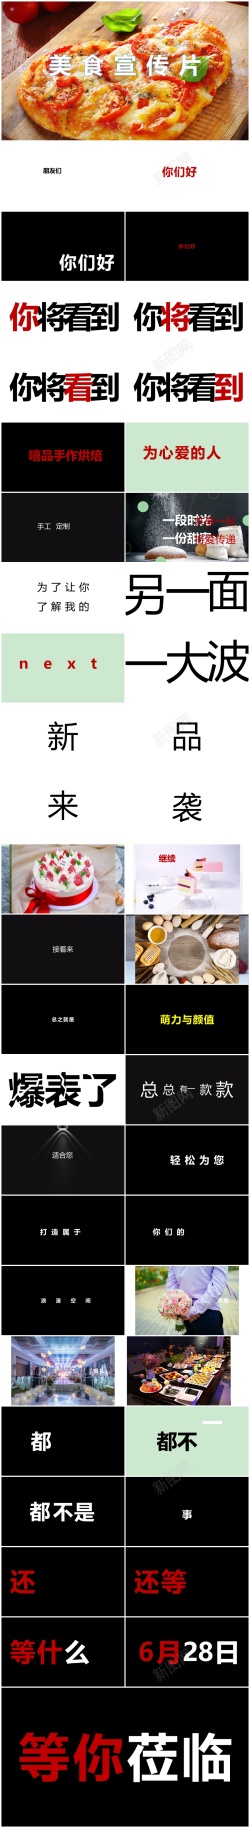 上海城市宣传片86酷炫快闪美食宣传片ppt模板